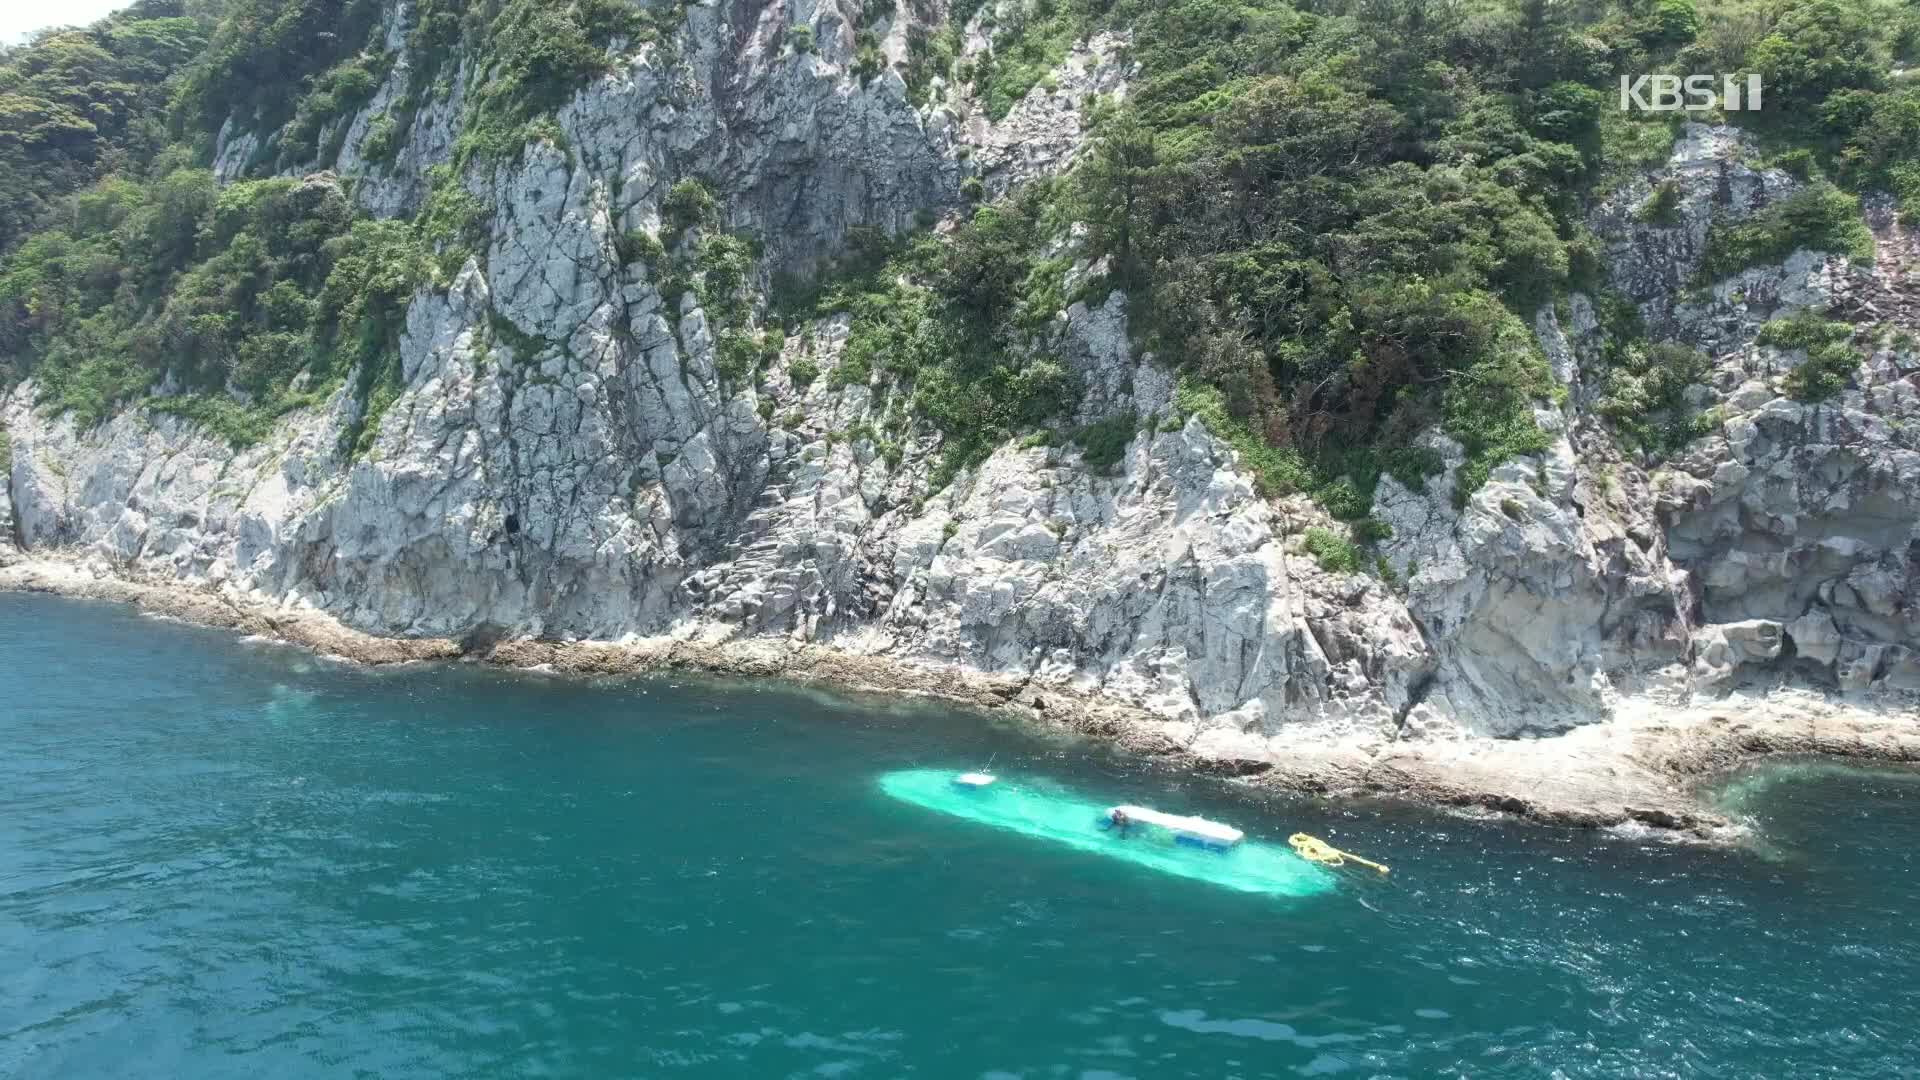 “관광 잠수함에 제주 바다 훼손”…환경단체 조사 촉구